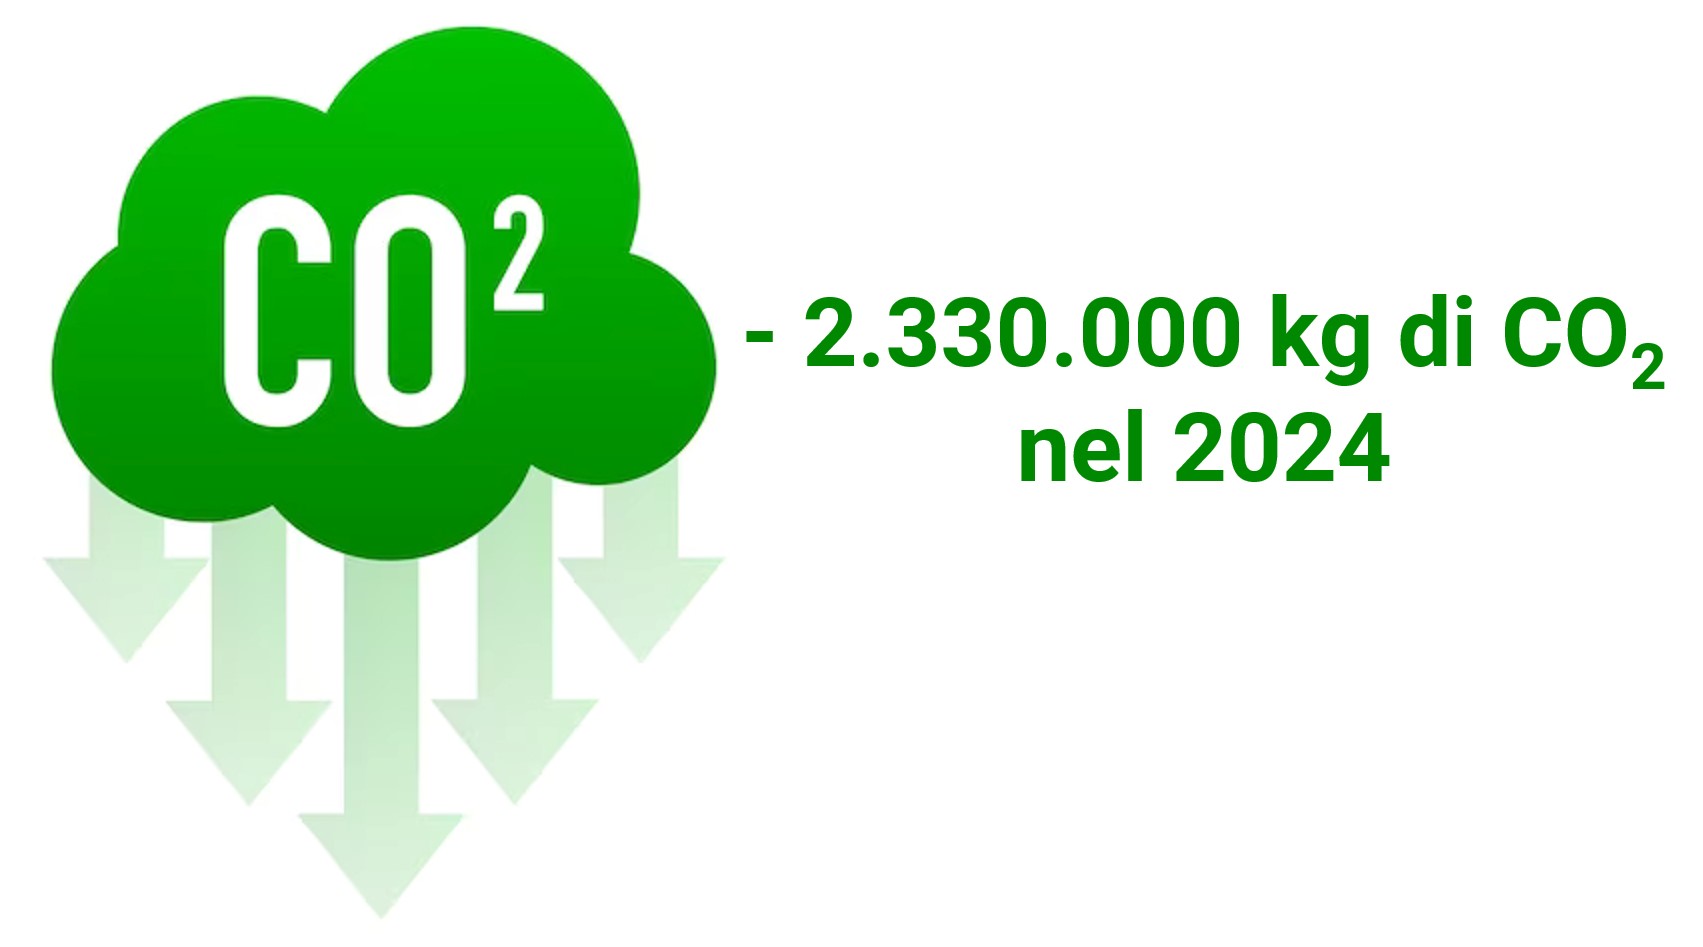 CO2-emissioni-risparmiate-2024-laterlite-processo-produttivo-sostenibile